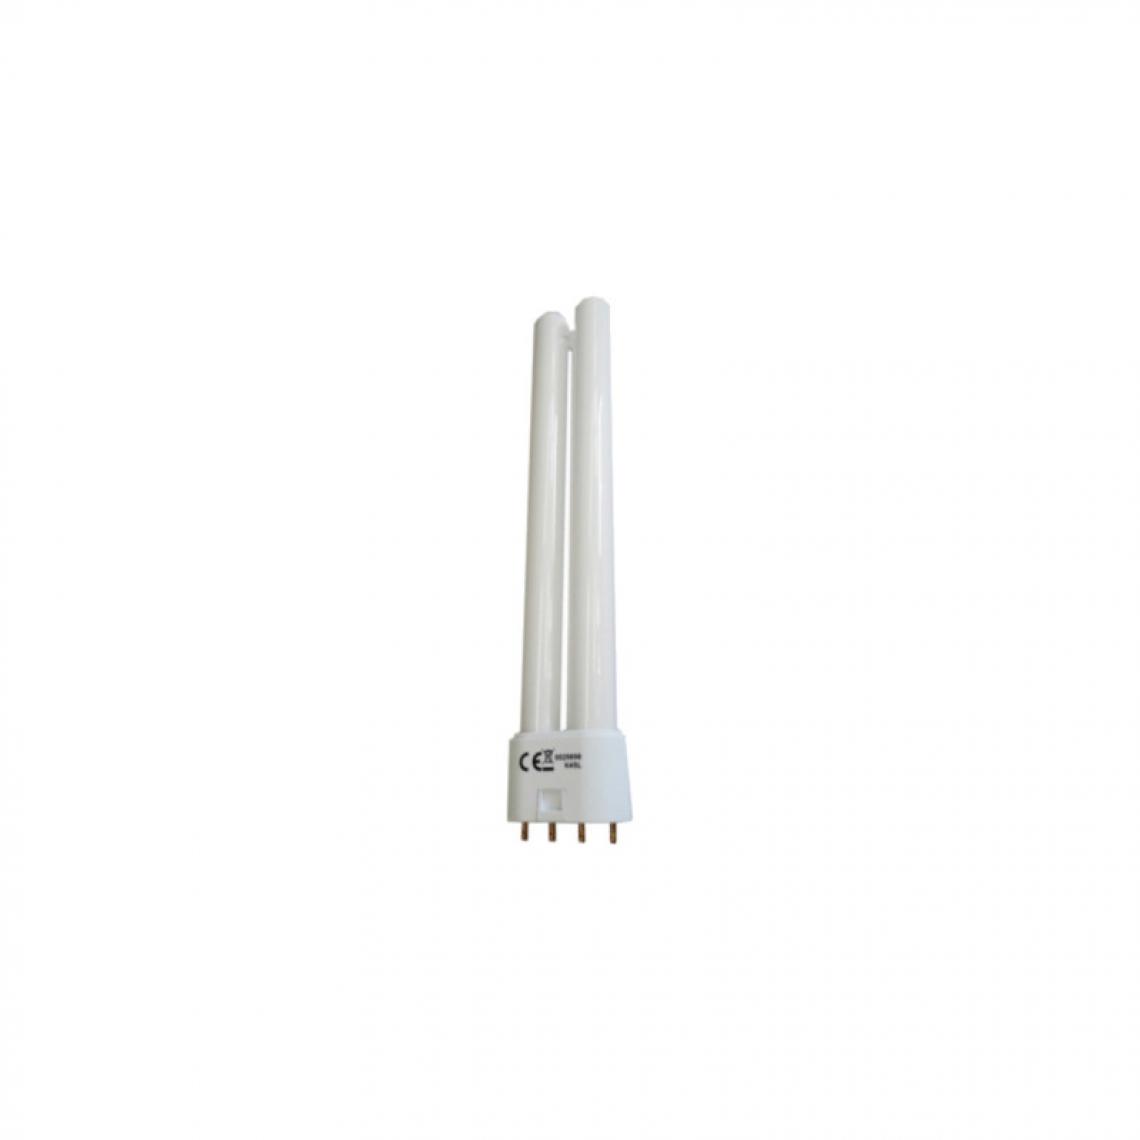 Edm - Ampoule EDM basse consommation - 36W - 2850lm - 4000K - 2G11 - Ampoules LED